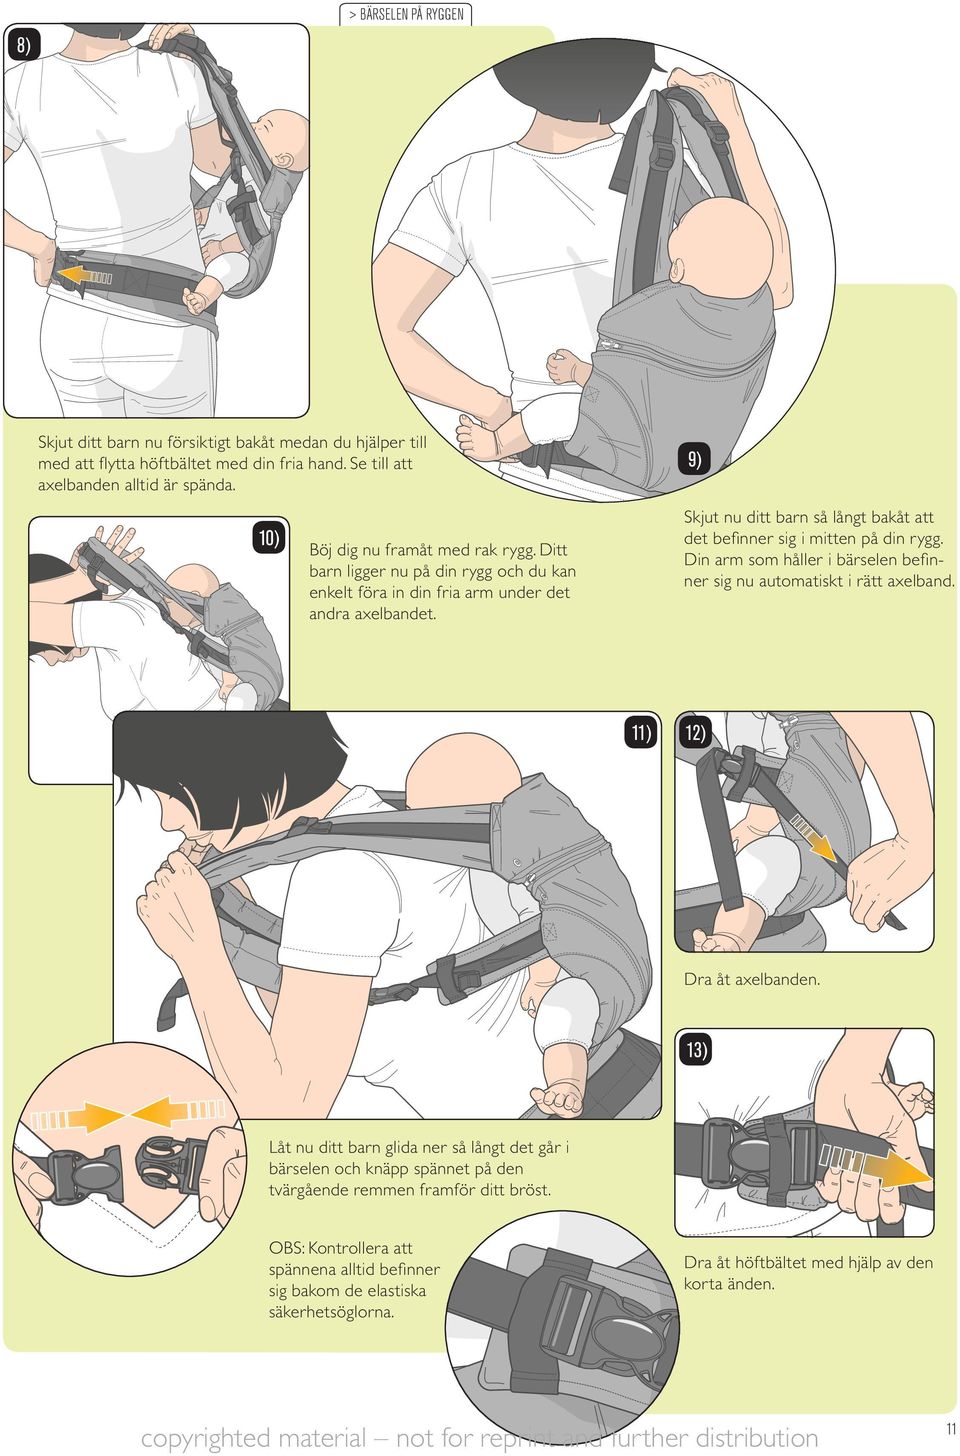 9) Skjut nu ditt barn så långt bakåt att det befi nner sig i mitten på din rygg. Din arm som håller i bärselen befi n- ner sig nu automatiskt i rätt axelband. 1 1 Dra åt axelbanden.